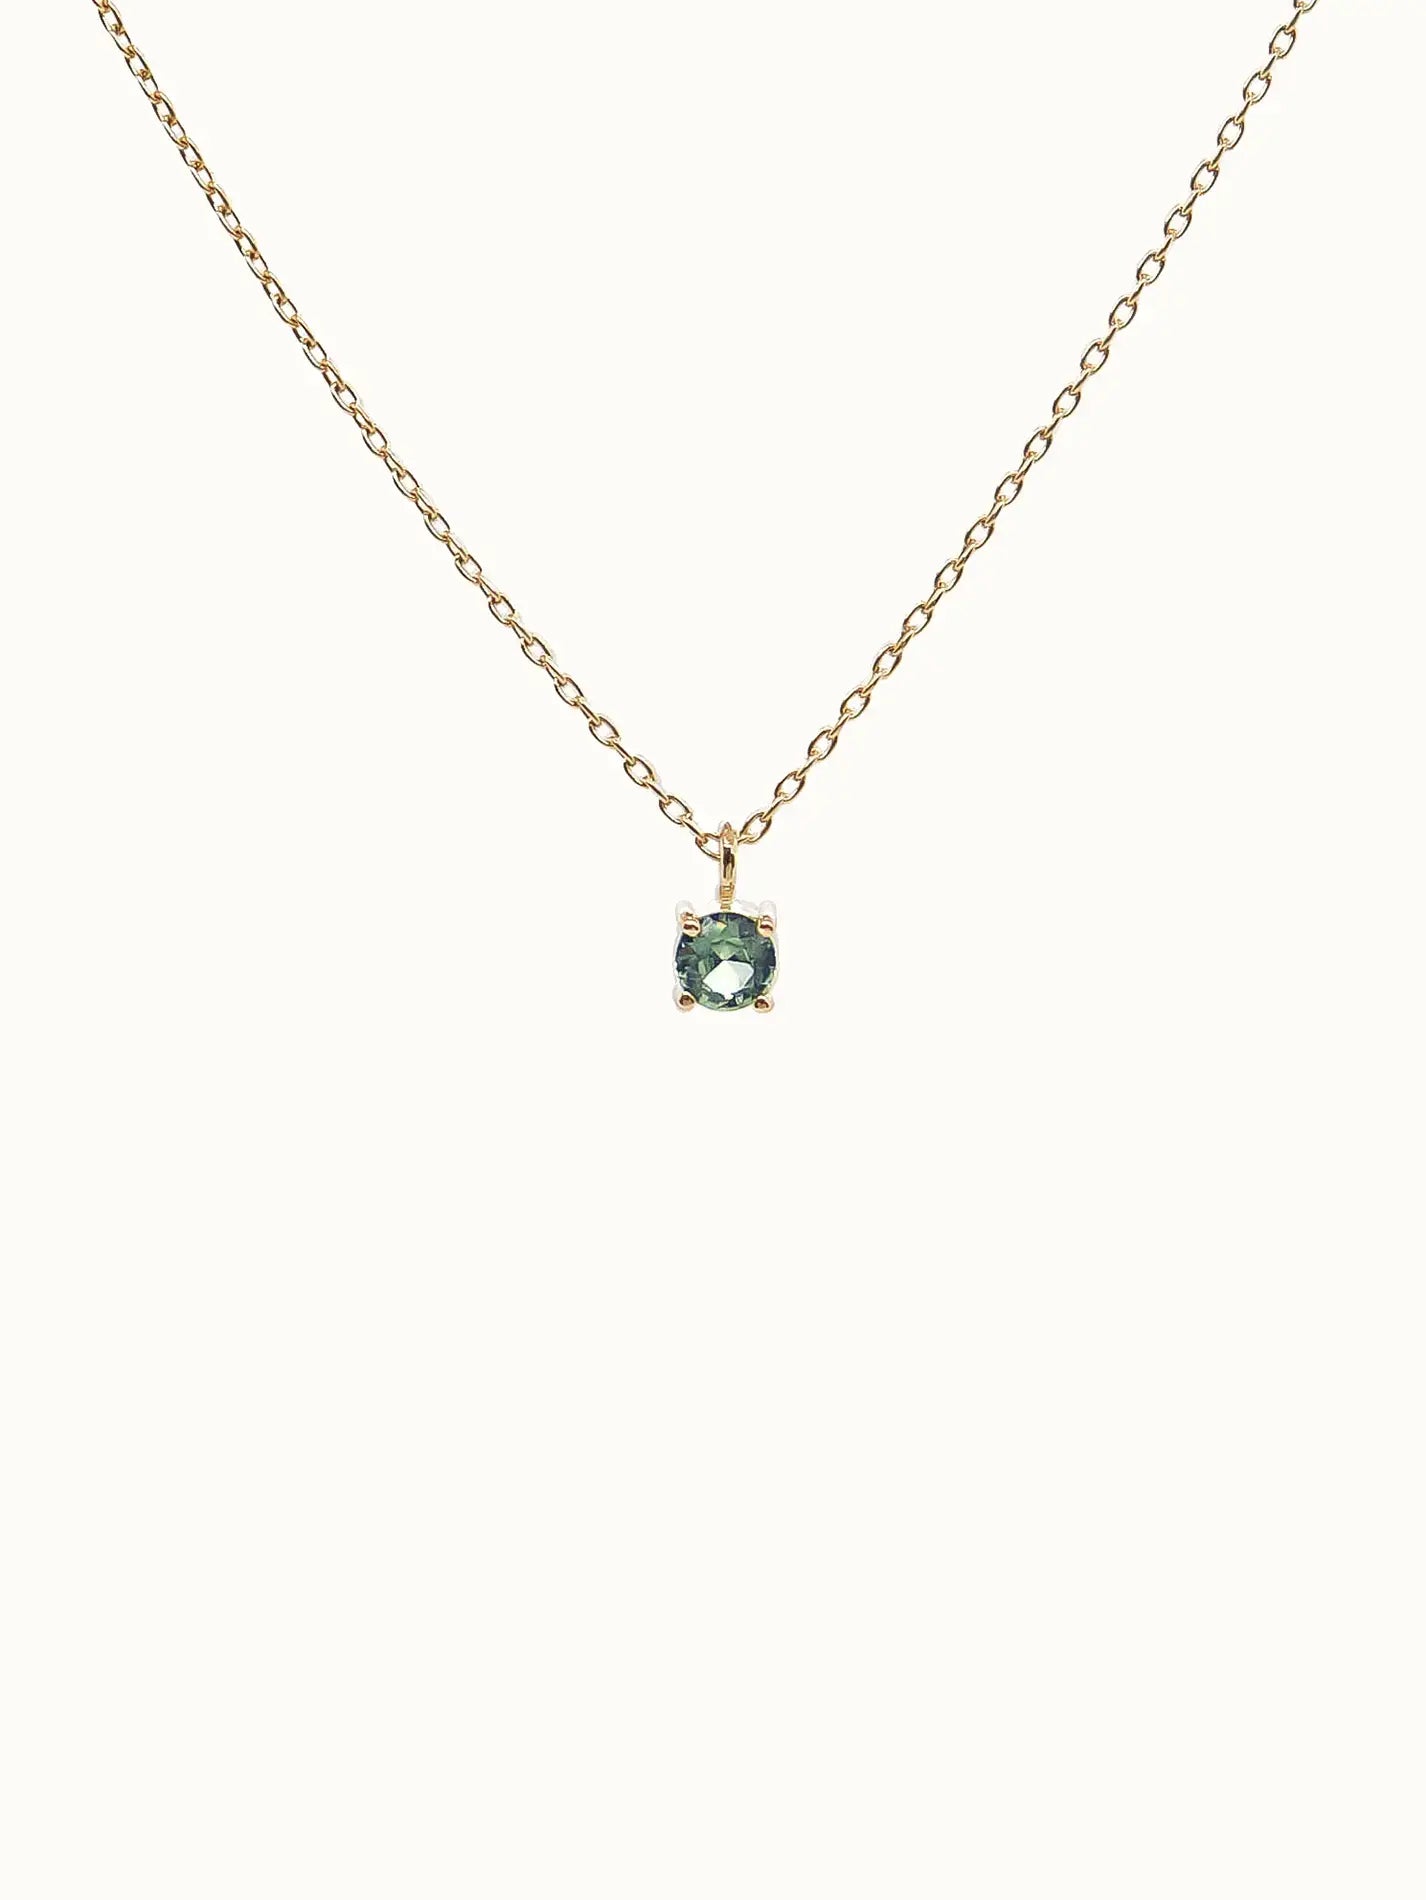 Teal sapphire necklace -studiocosette.com